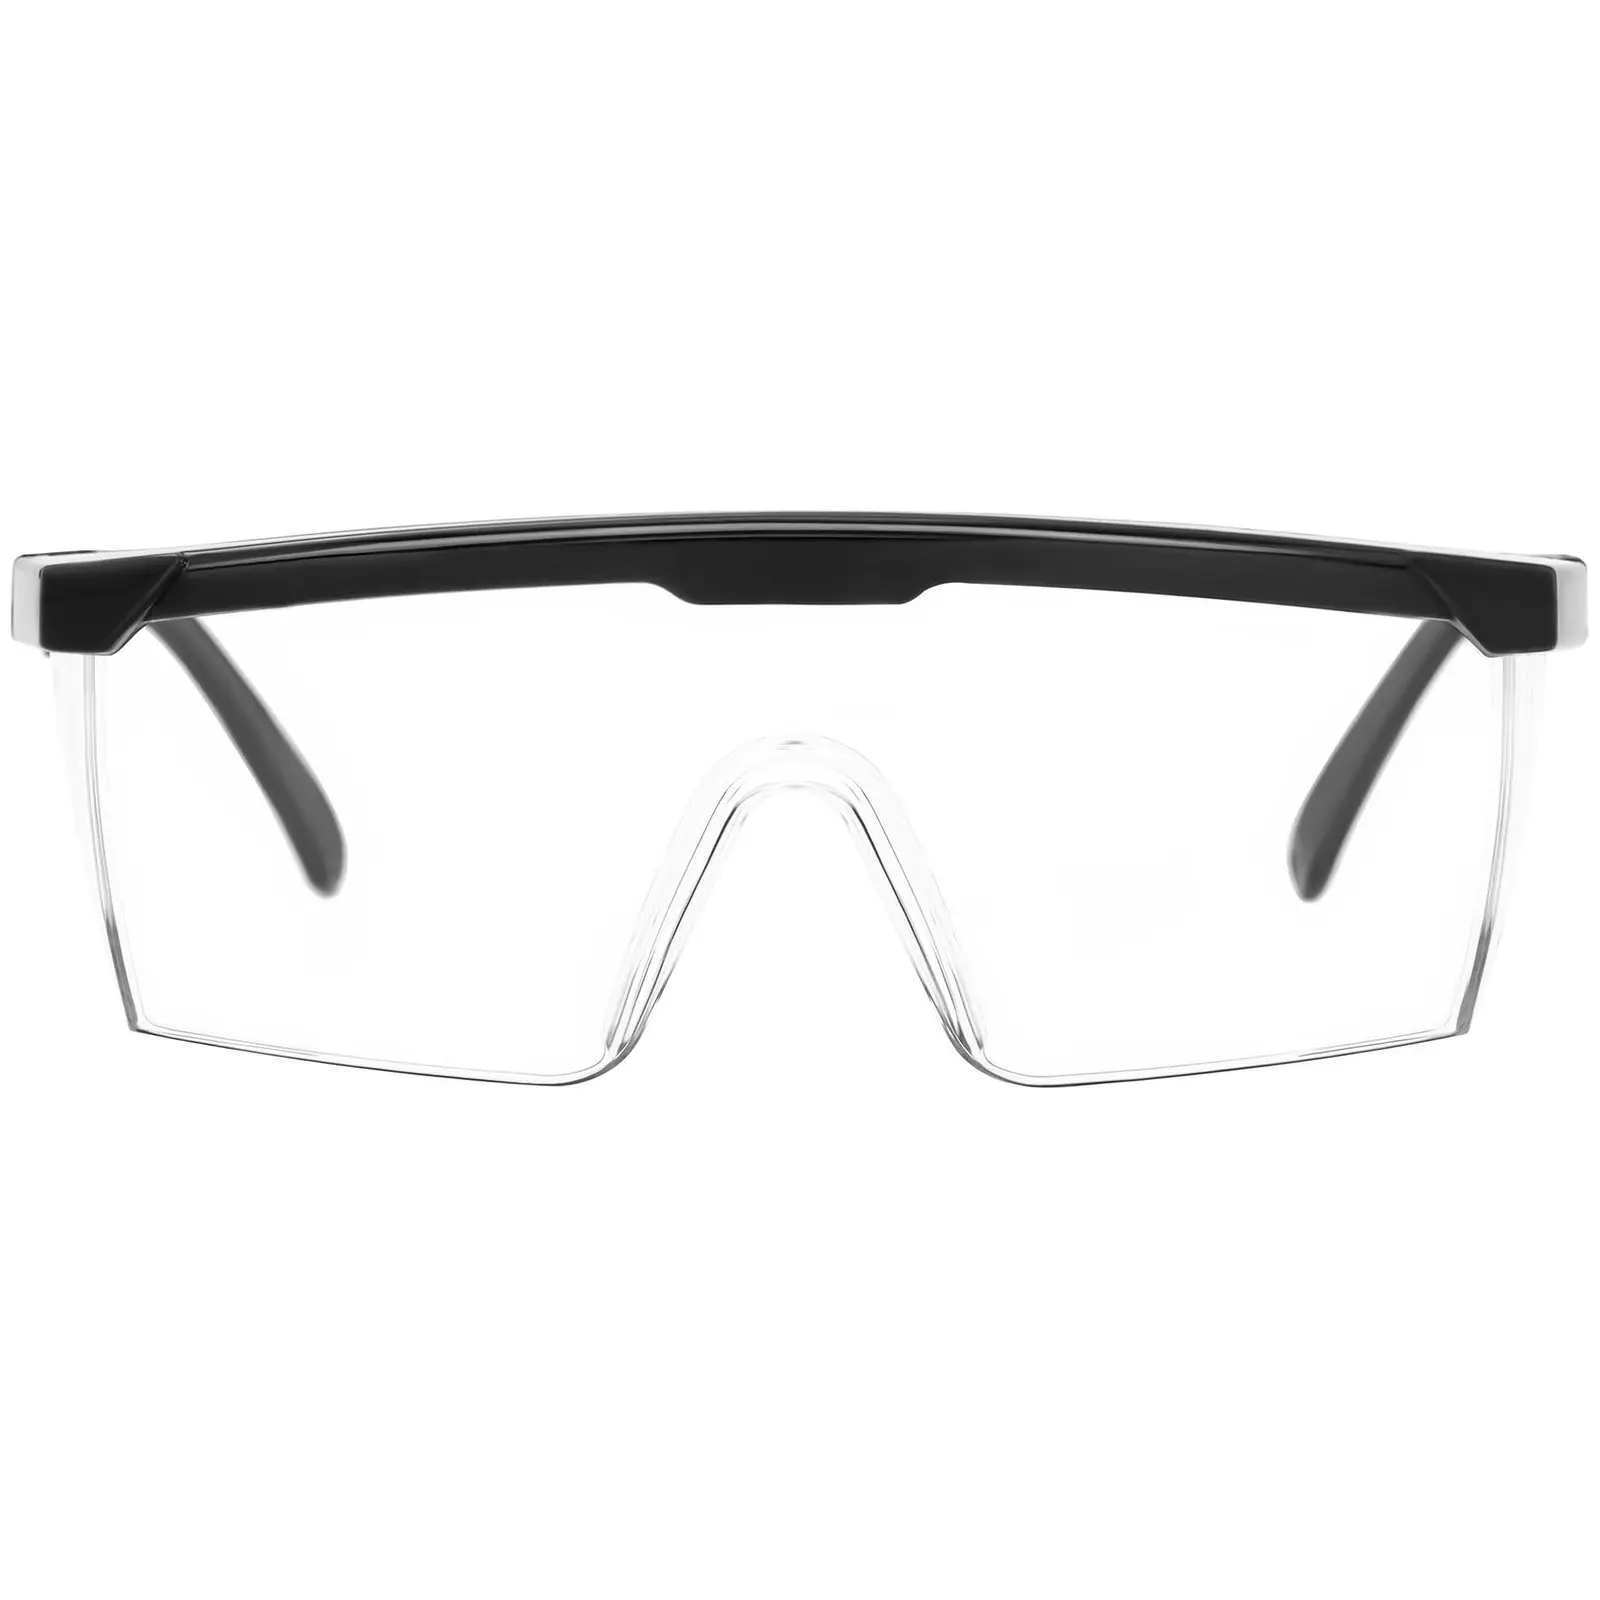 Gafas de seguridad - set de 15 - transparentes - ajustables